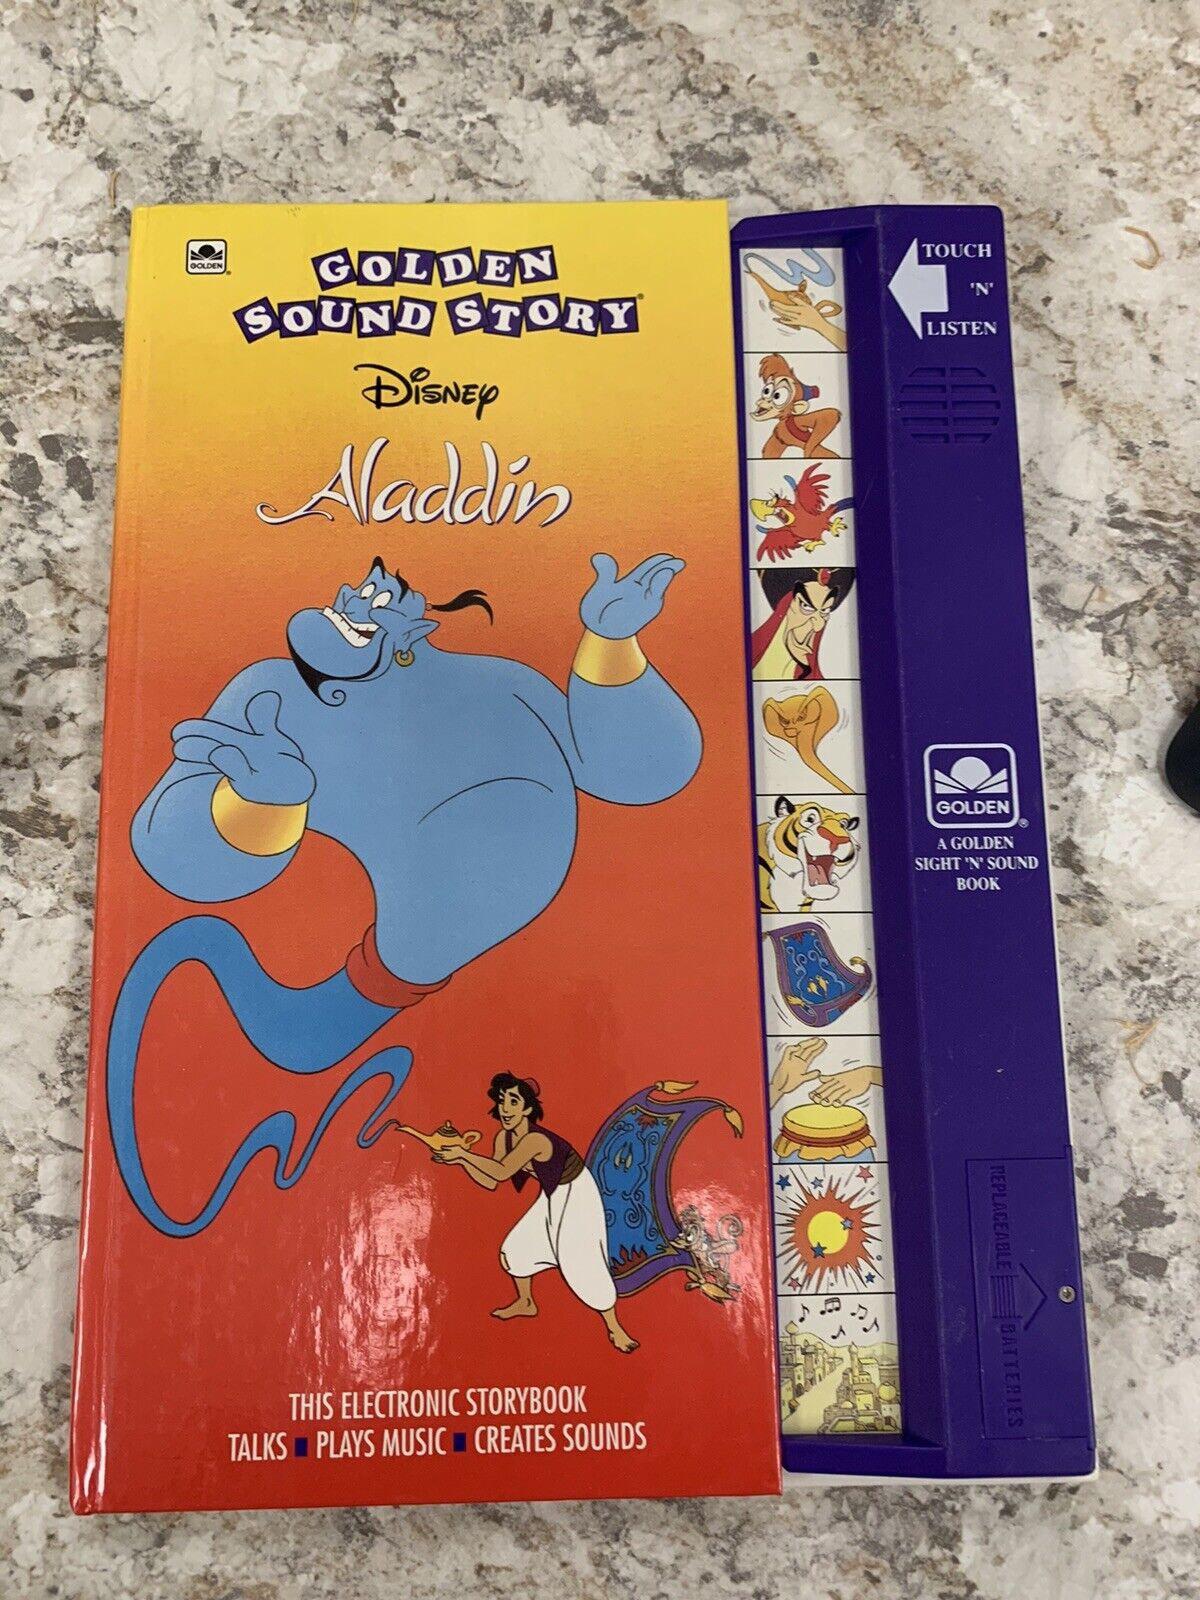 Vintage 1992 Golden Sound Story Disney Aladdin Electronic Story Book